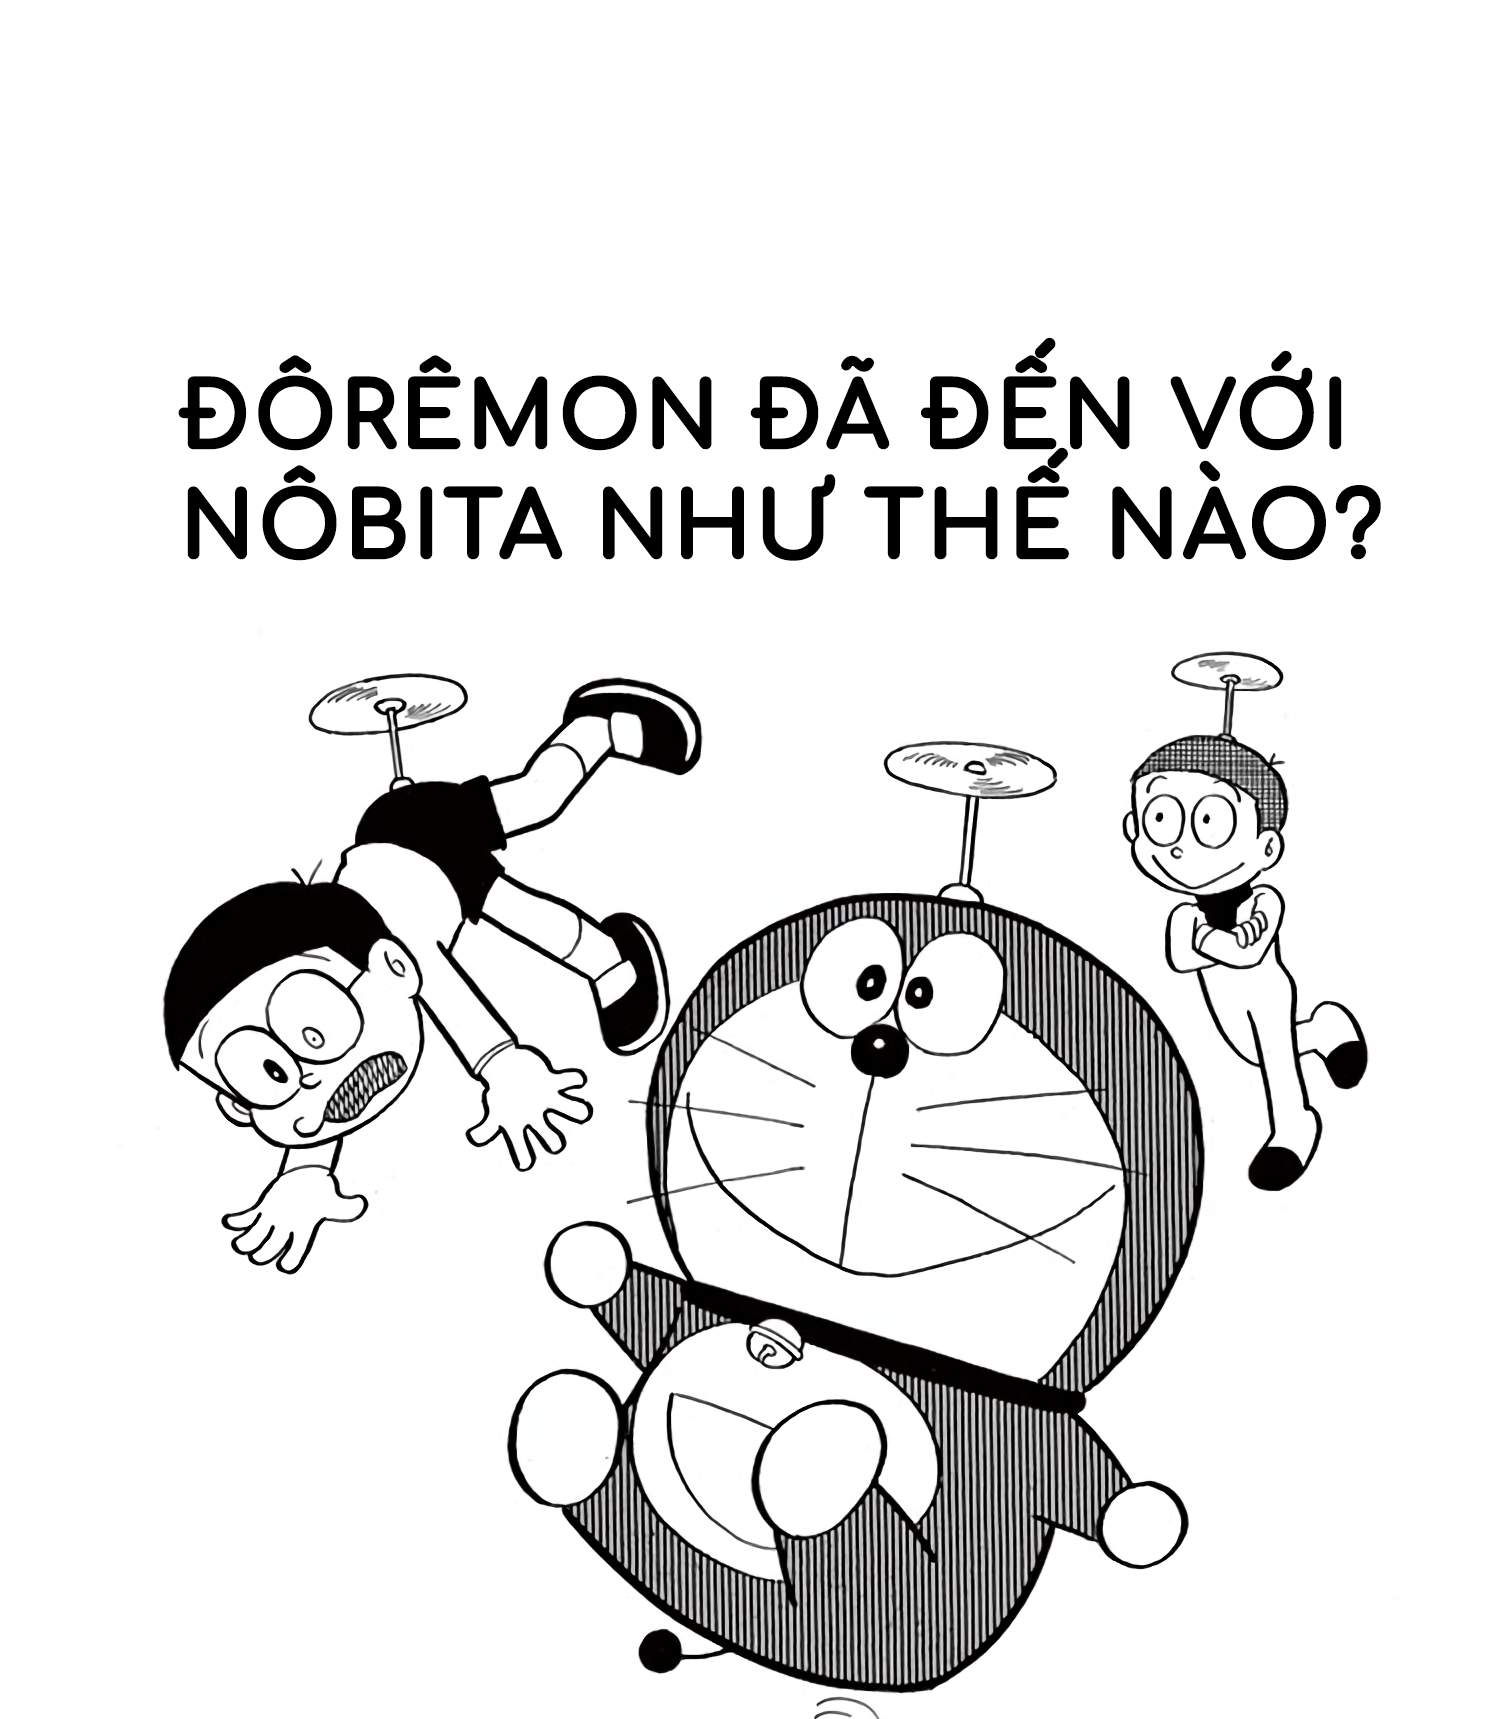 Doraemon: Những hình ảnh về chú mèo máy thông minh, tuyệt vời này sẽ hấp dẫn bạn đến mức không muốn bỏ lỡ bất kỳ chi tiết nào! Doraemon là người bạn đồng hành hoàn hảo của bạn vào những ngày mệt mỏi và bận rộn nhất.